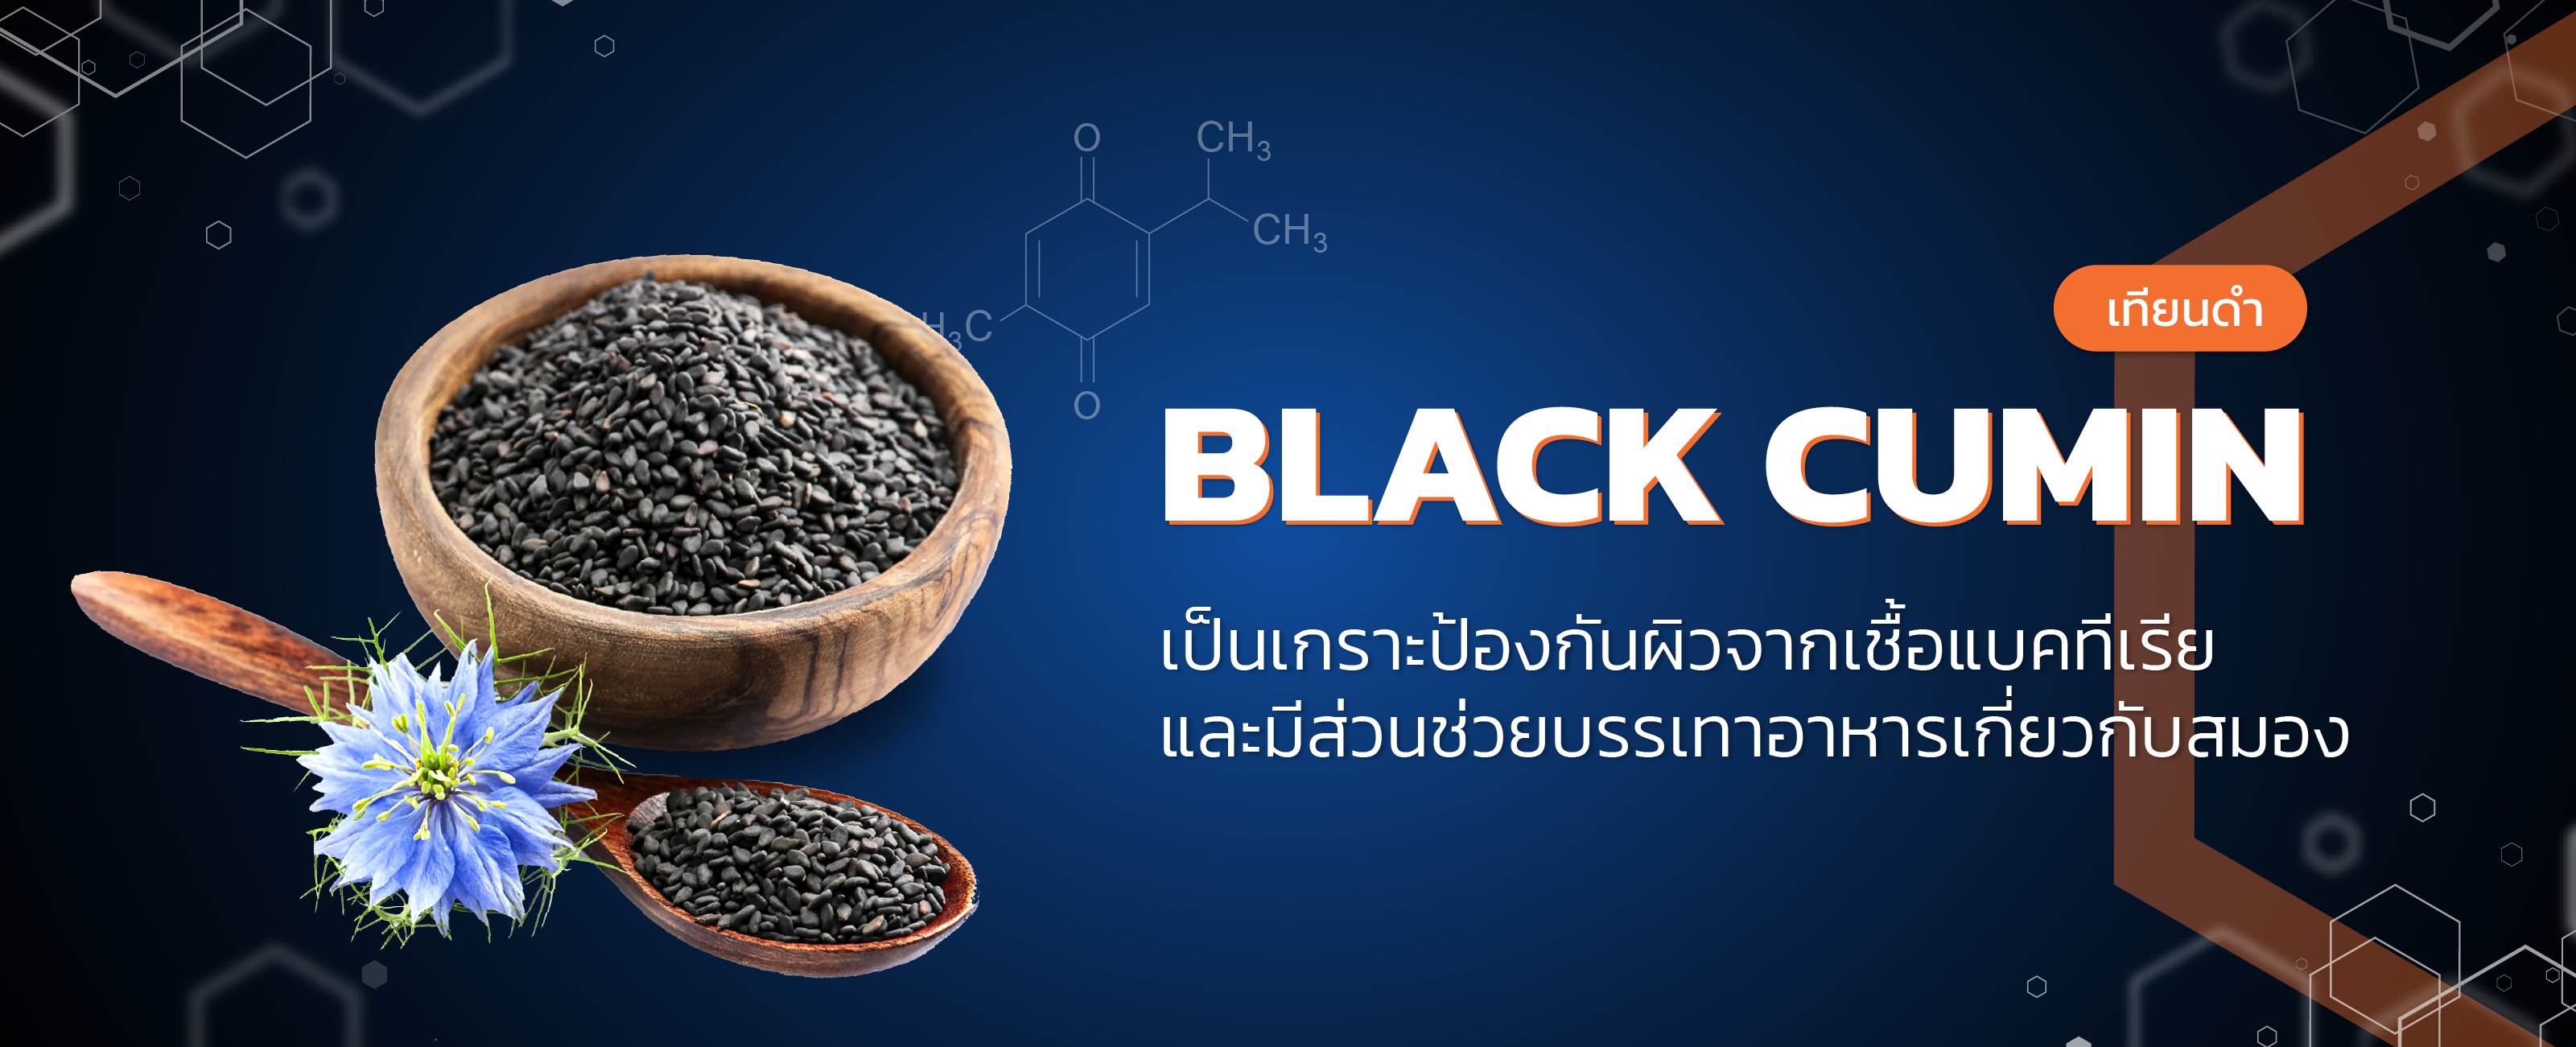 สารสกัดเทียนดำ (black cumin)